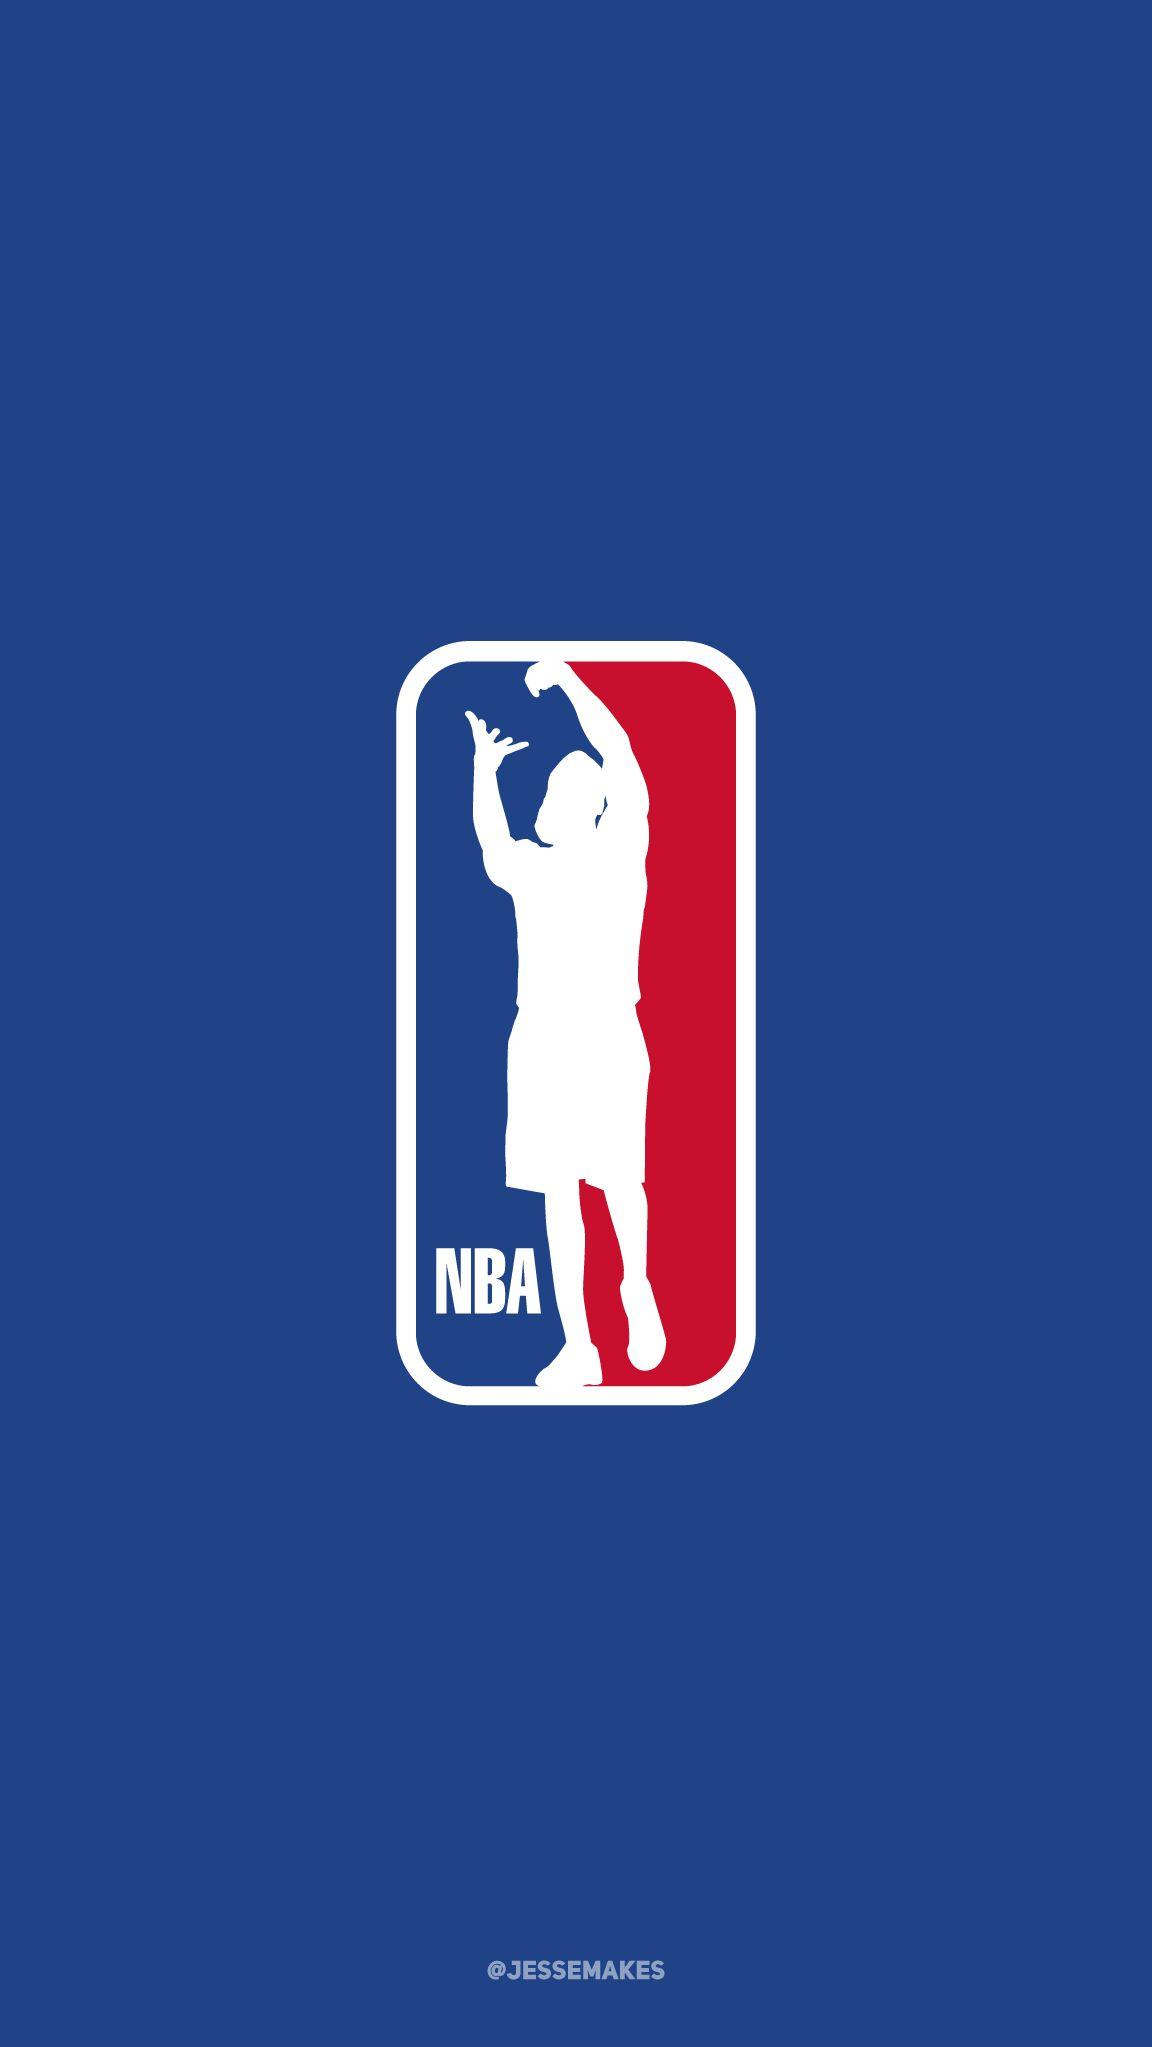 James Harden Logo - James Harden as the subject of the NBA logo. Part of my NBA Logo ...